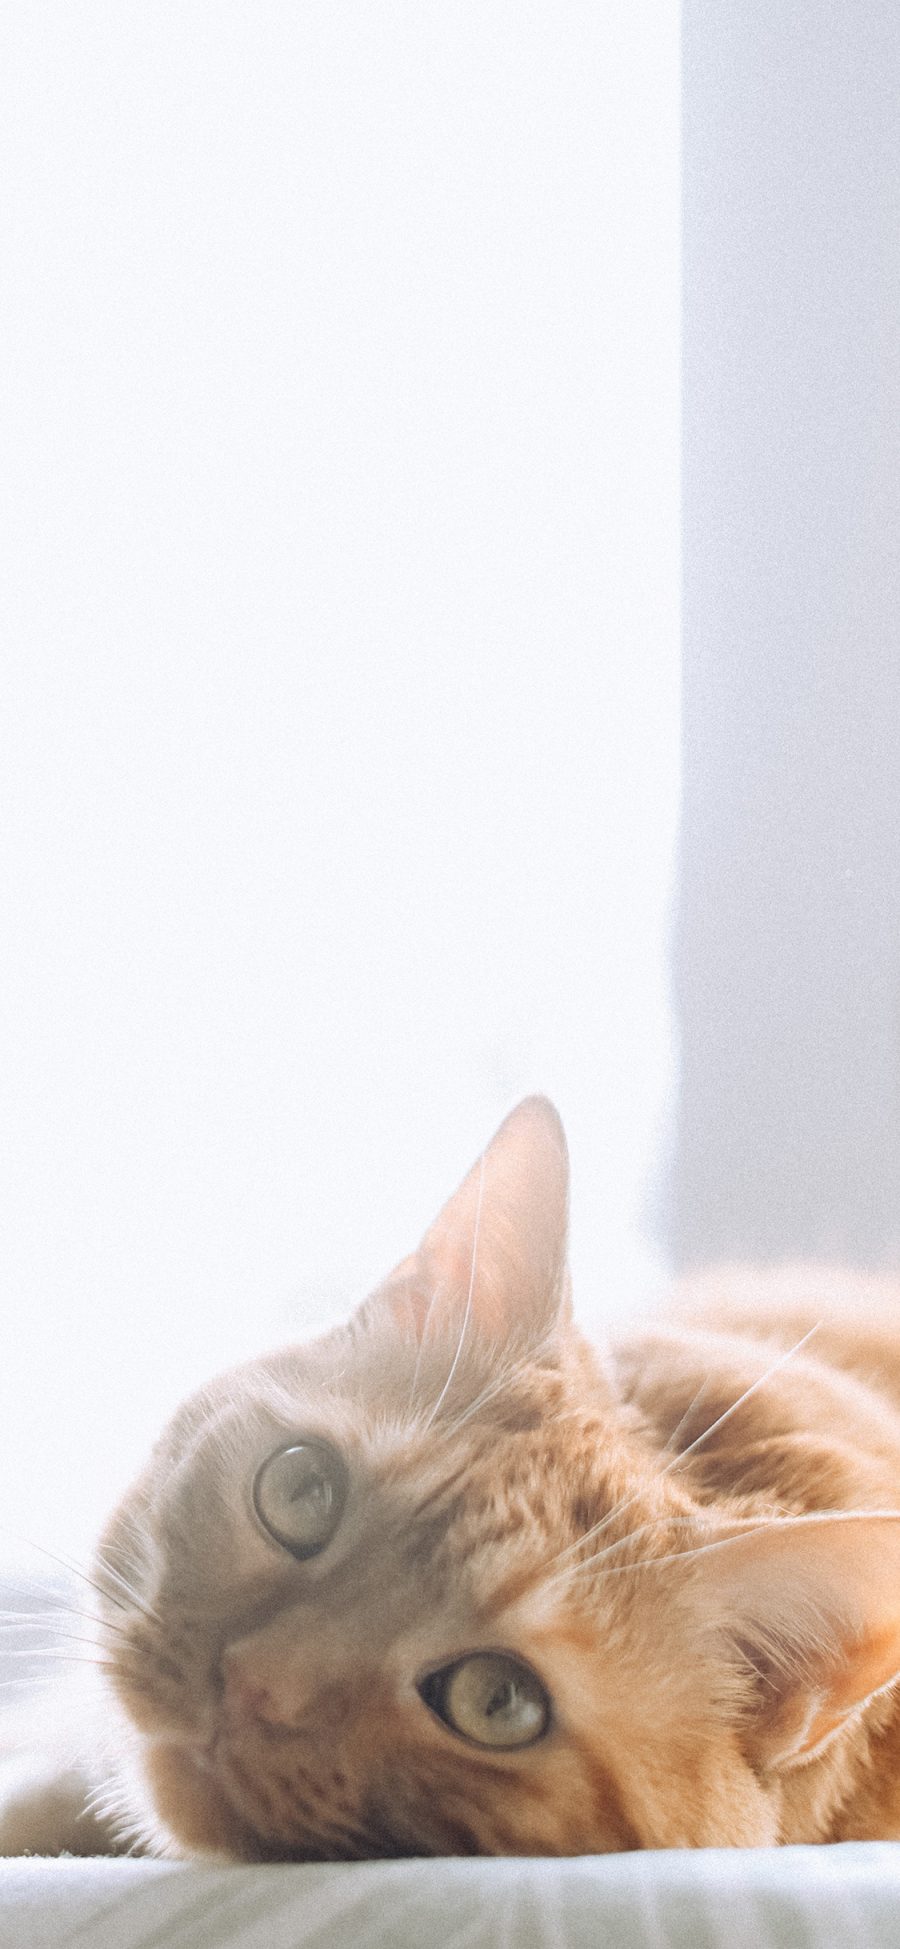 [2436×1125]宠物 猫咪 橘猫 睡觉 苹果手机壁纸图片